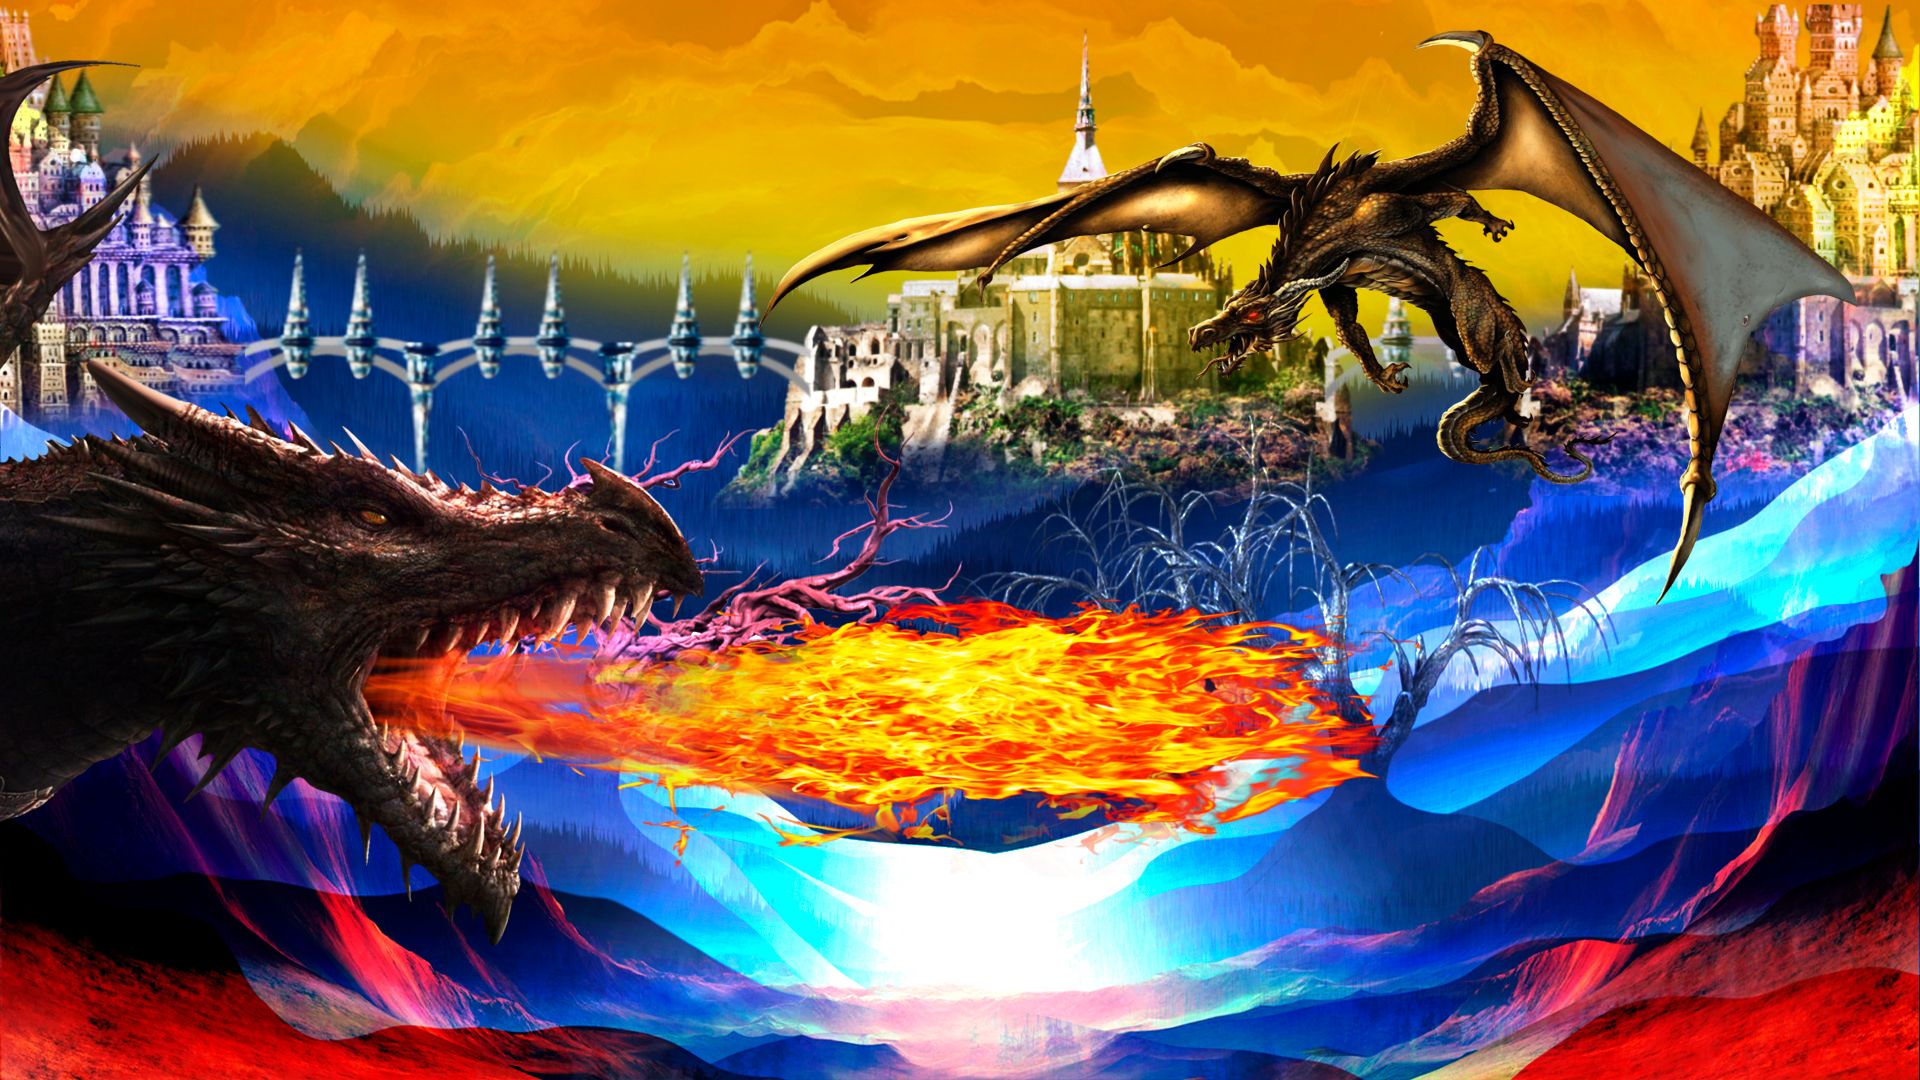 La hechicera y sus dragones 7.jpg